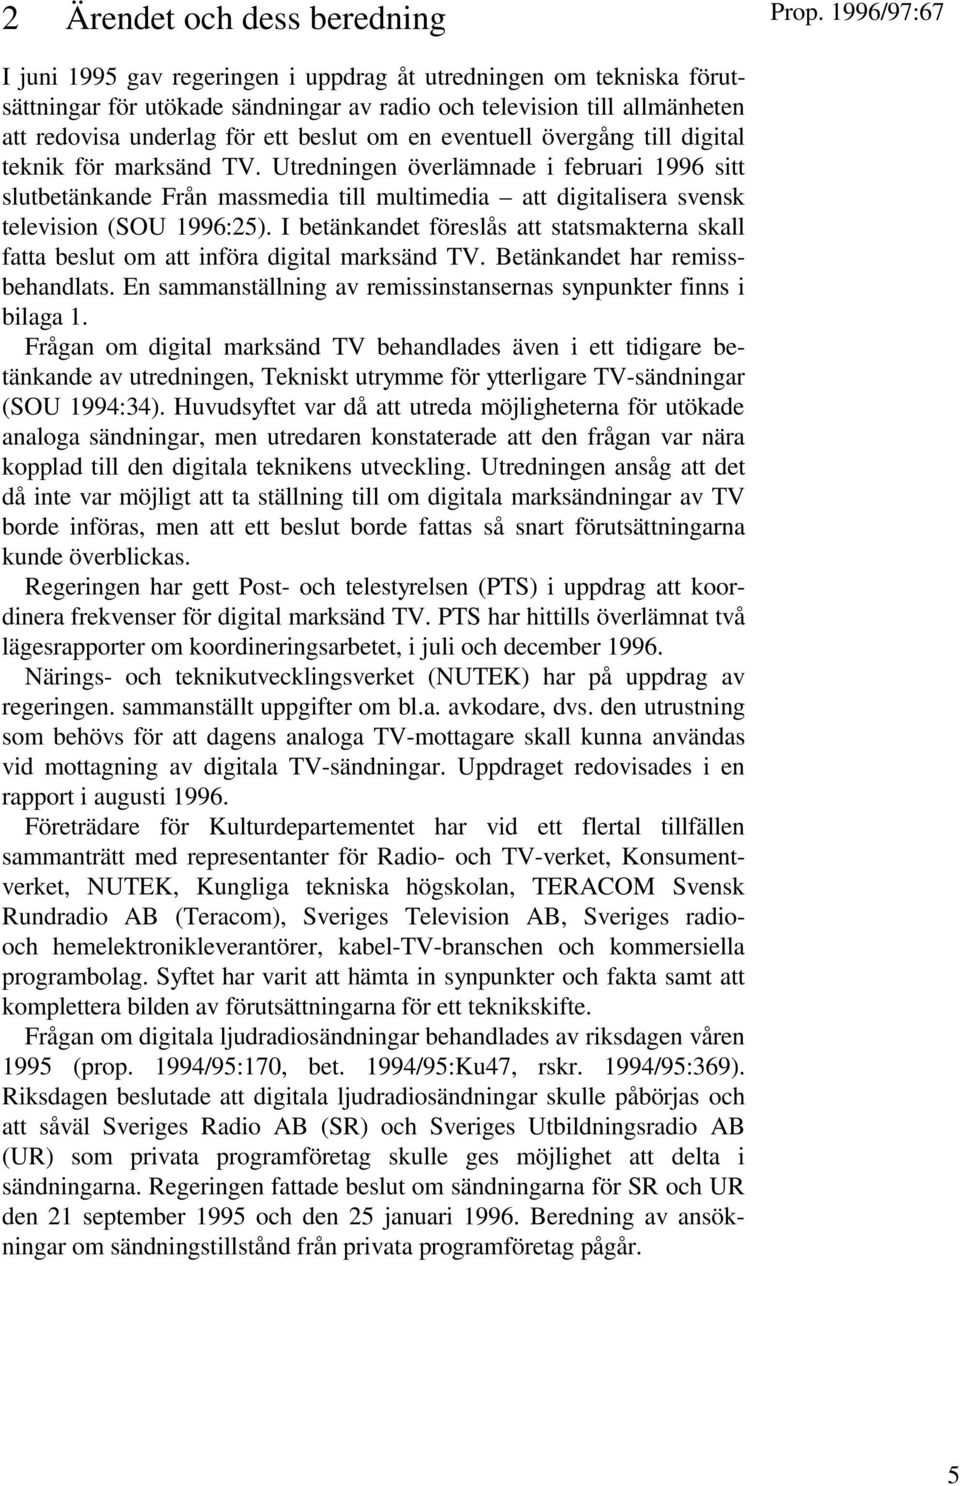 Utredningen överlämnade i februari 1996 sitt slutbetänkande Från massmedia till multimedia att digitalisera svensk television (SOU 1996:25).